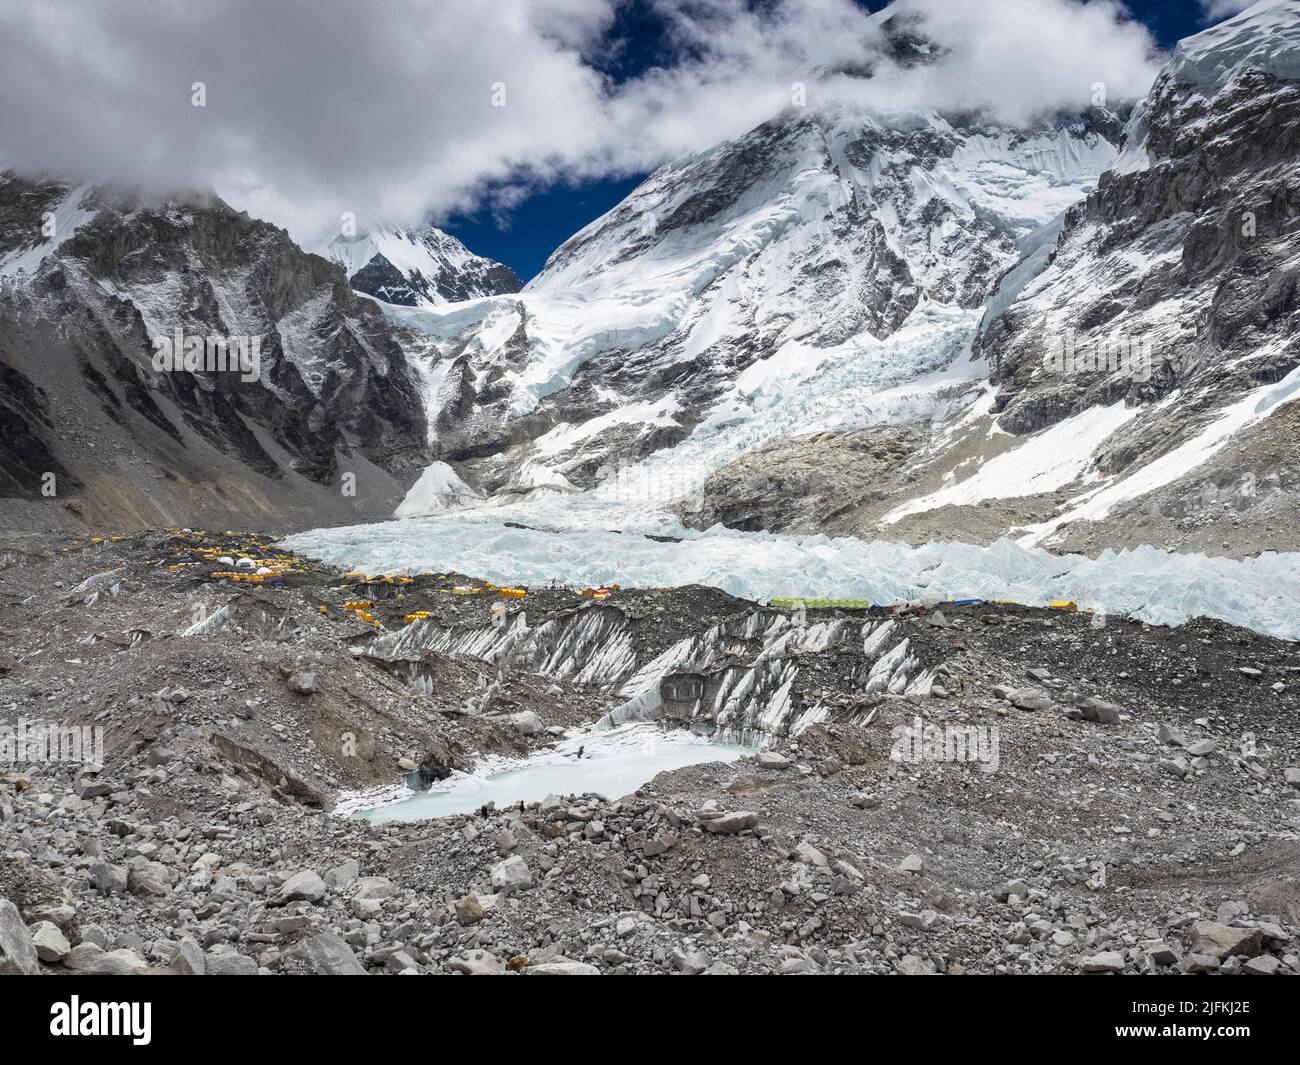 Die gelben Zelte des Everest-Basislagers am Rande des Khumbu-Eisbruchs als niedrige Maiwolken umhüllen Khumbutse (6636m) (l) und die Westschulter (r). Stockfoto